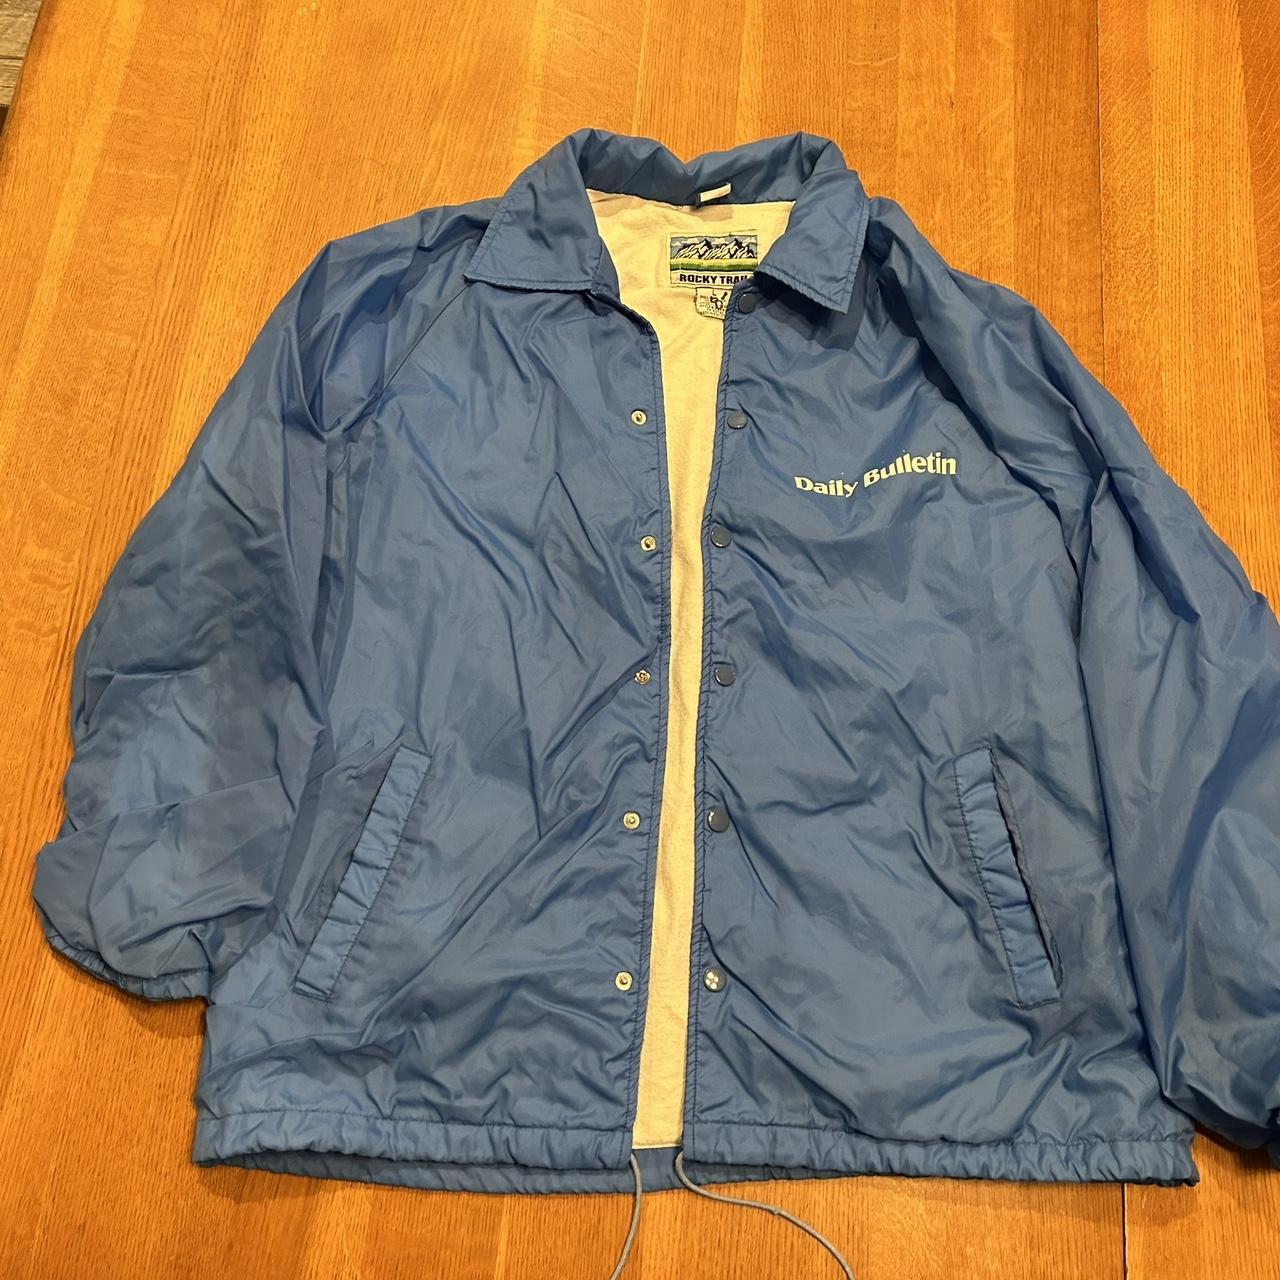 Windbreaker jacket, vintage lg - Depop